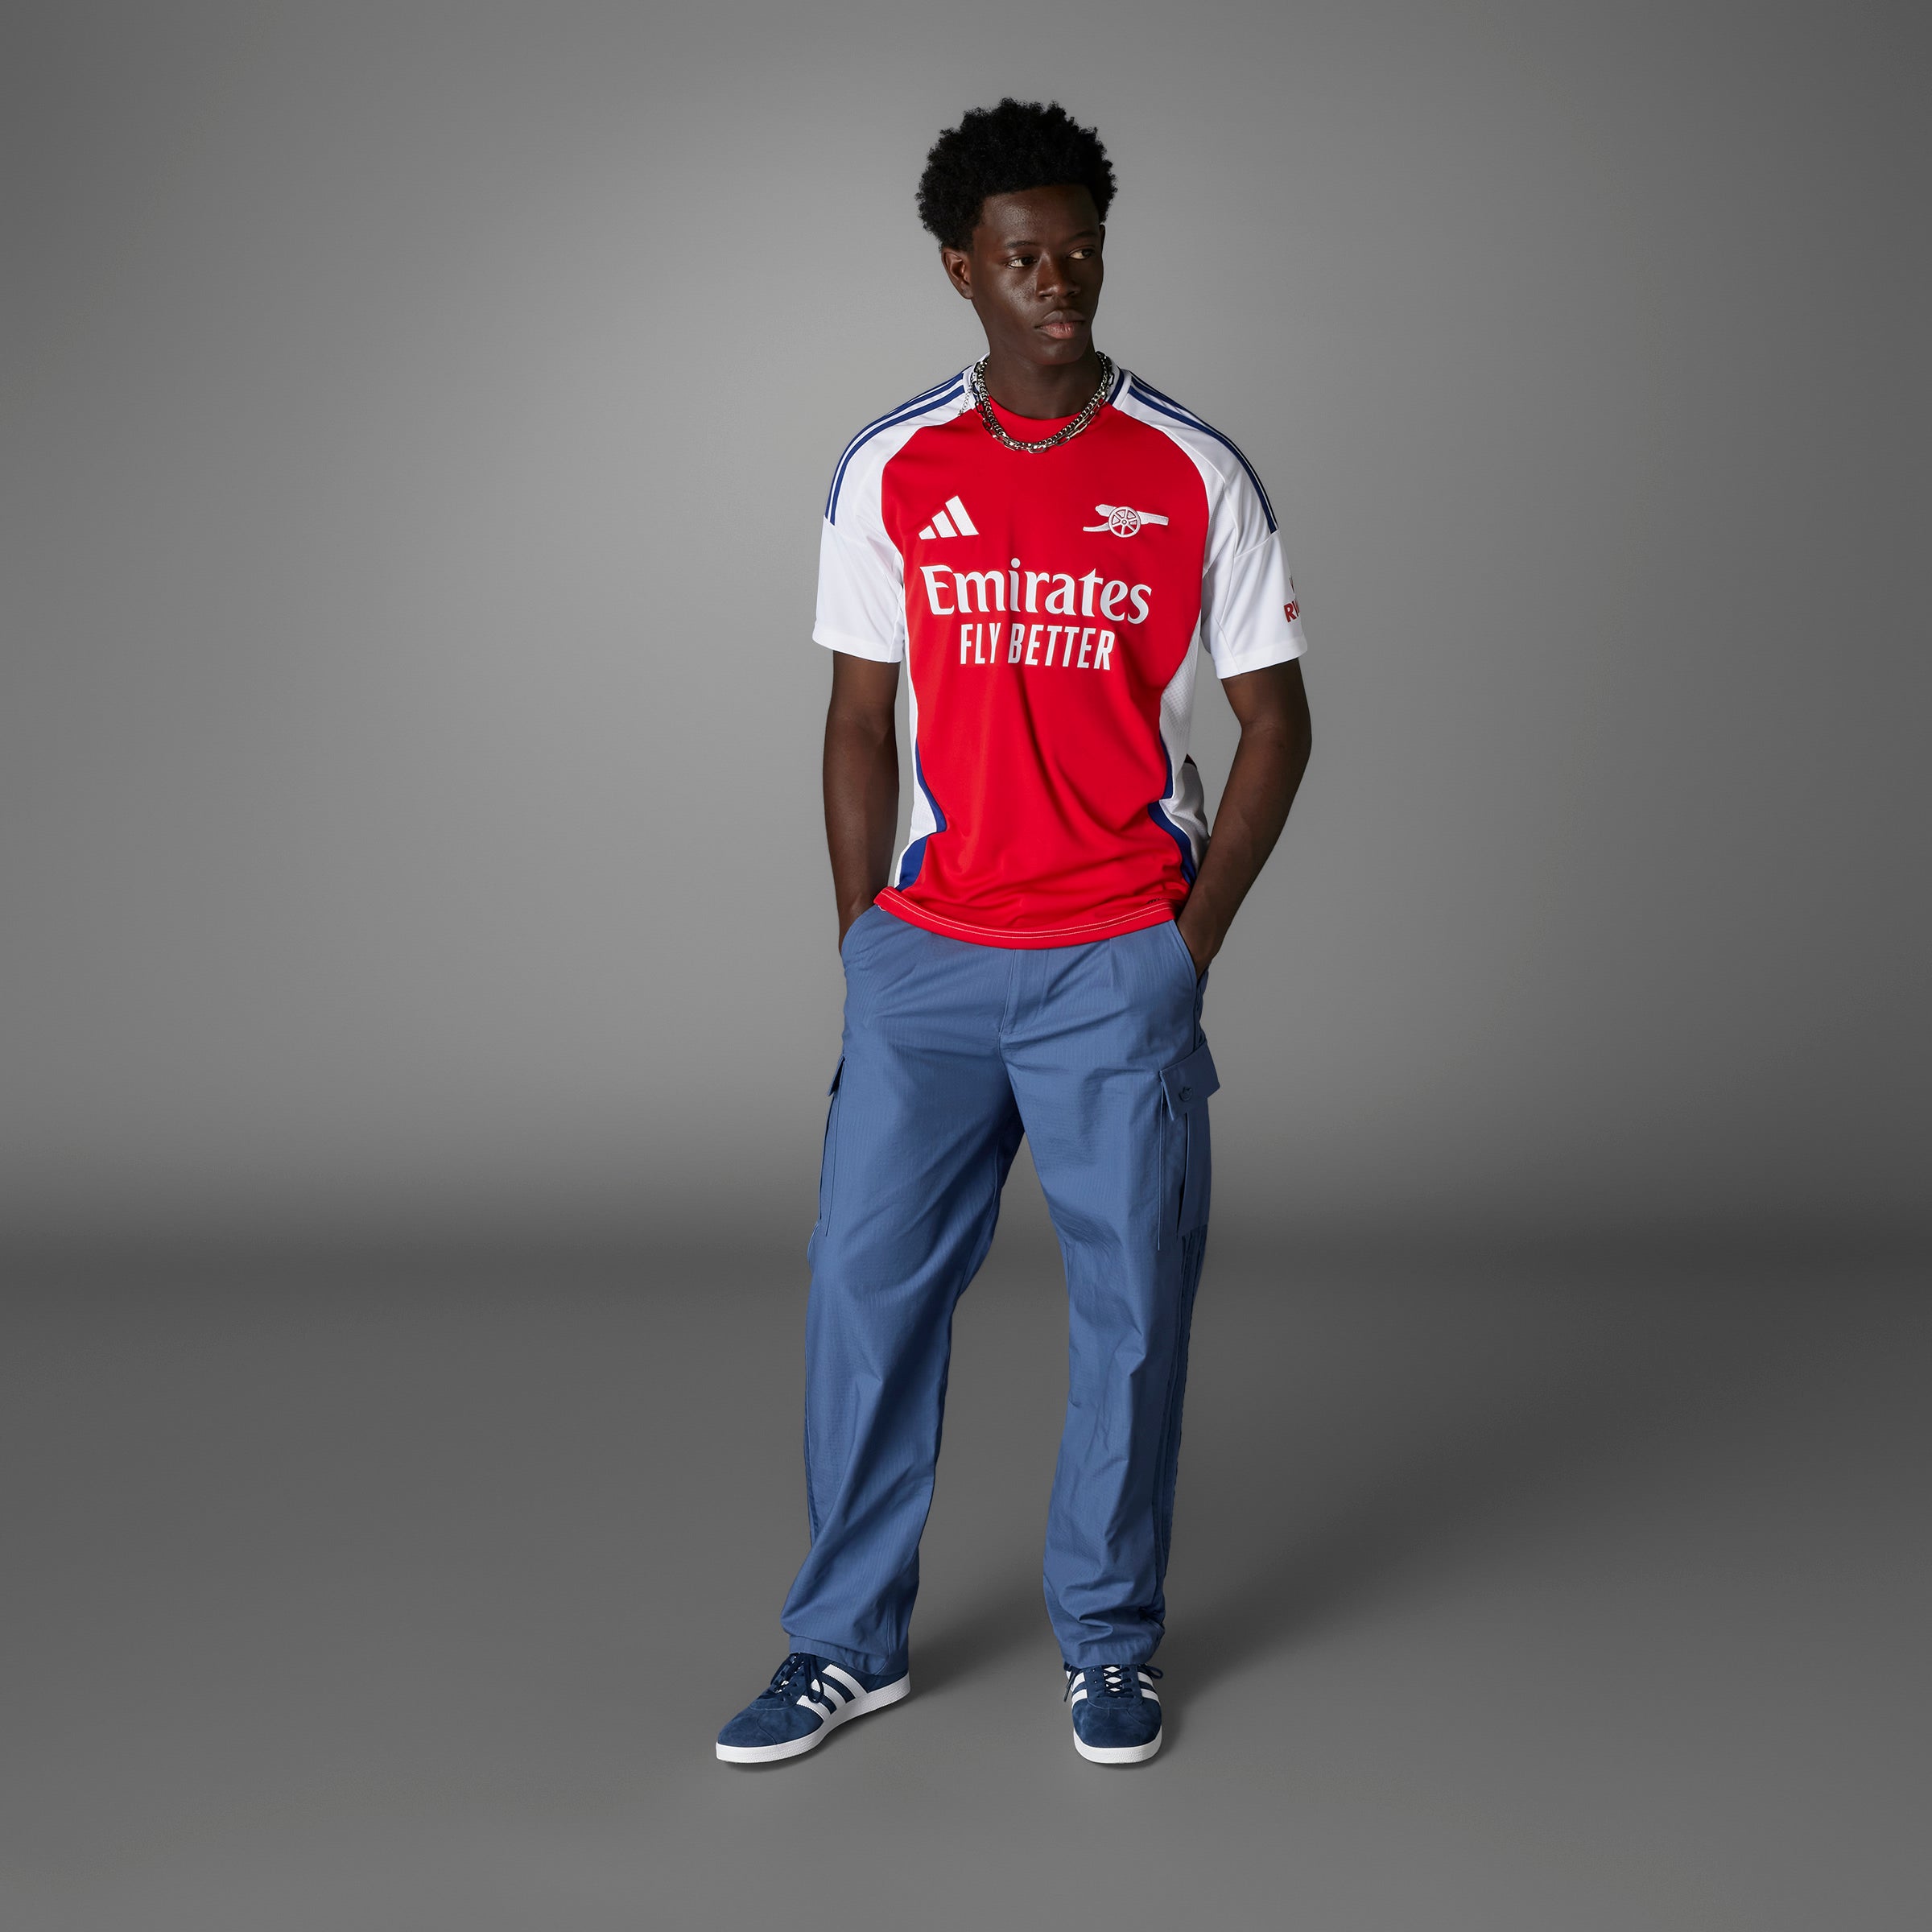 Camiseta adidas de equipación del Arsenal FC para hombre 24/25